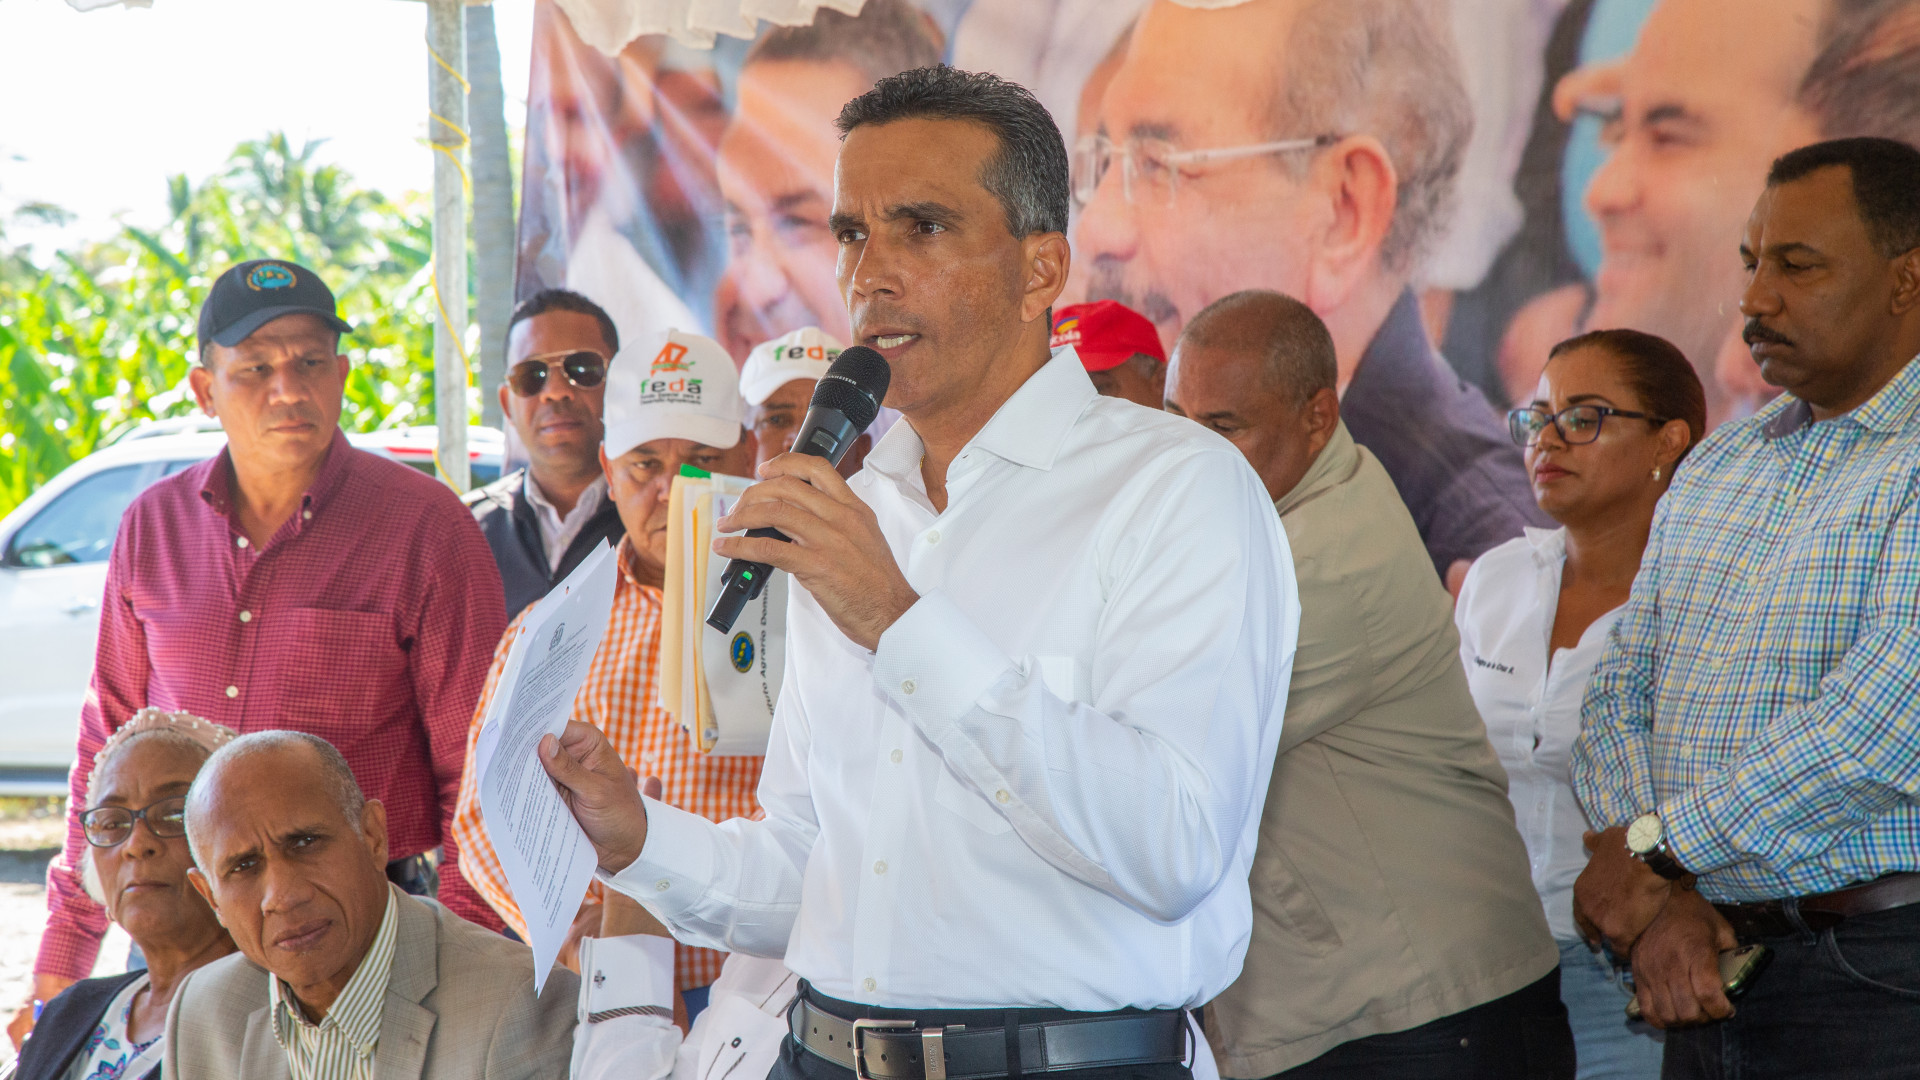 REPÚBLICA DOMINICANA: Tras Visita Sorpresa, comisión presidencial regresa a Barahona, se reúne con productores de coco e inicia mesas de trabajo